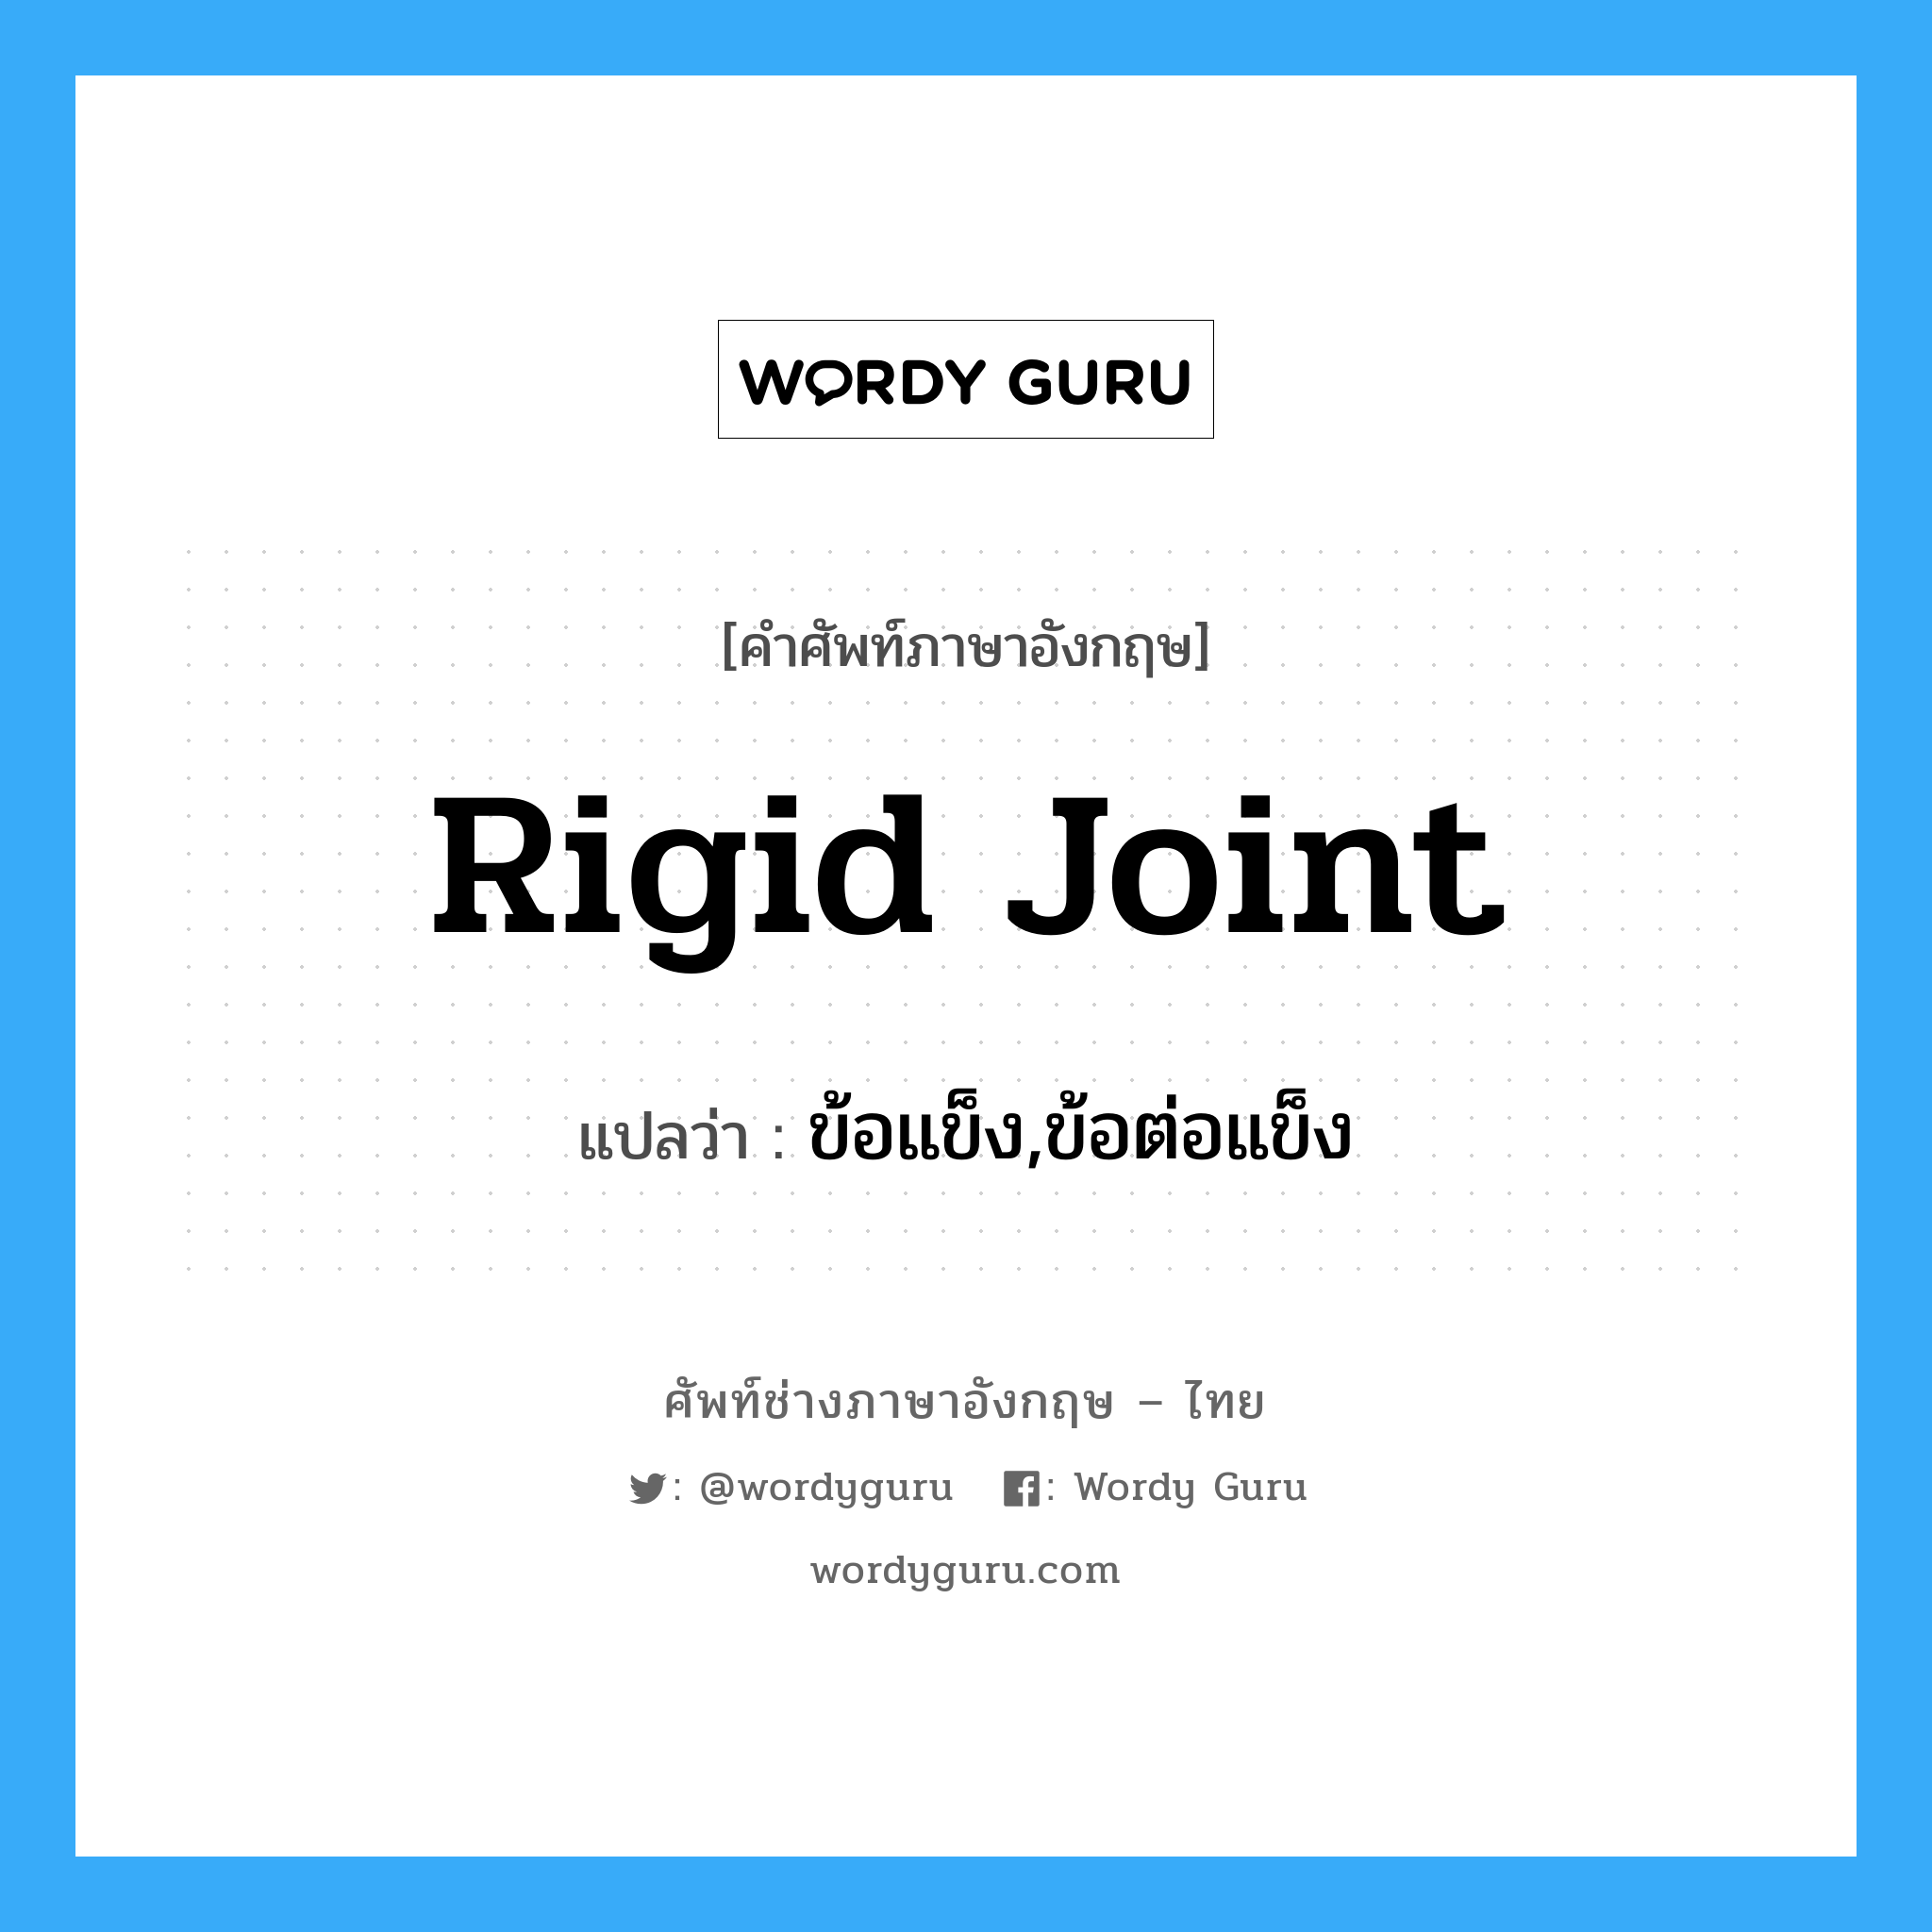 rigid joint แปลว่า?, คำศัพท์ช่างภาษาอังกฤษ - ไทย rigid joint คำศัพท์ภาษาอังกฤษ rigid joint แปลว่า ข้อแข็ง,ข้อต่อแข็ง